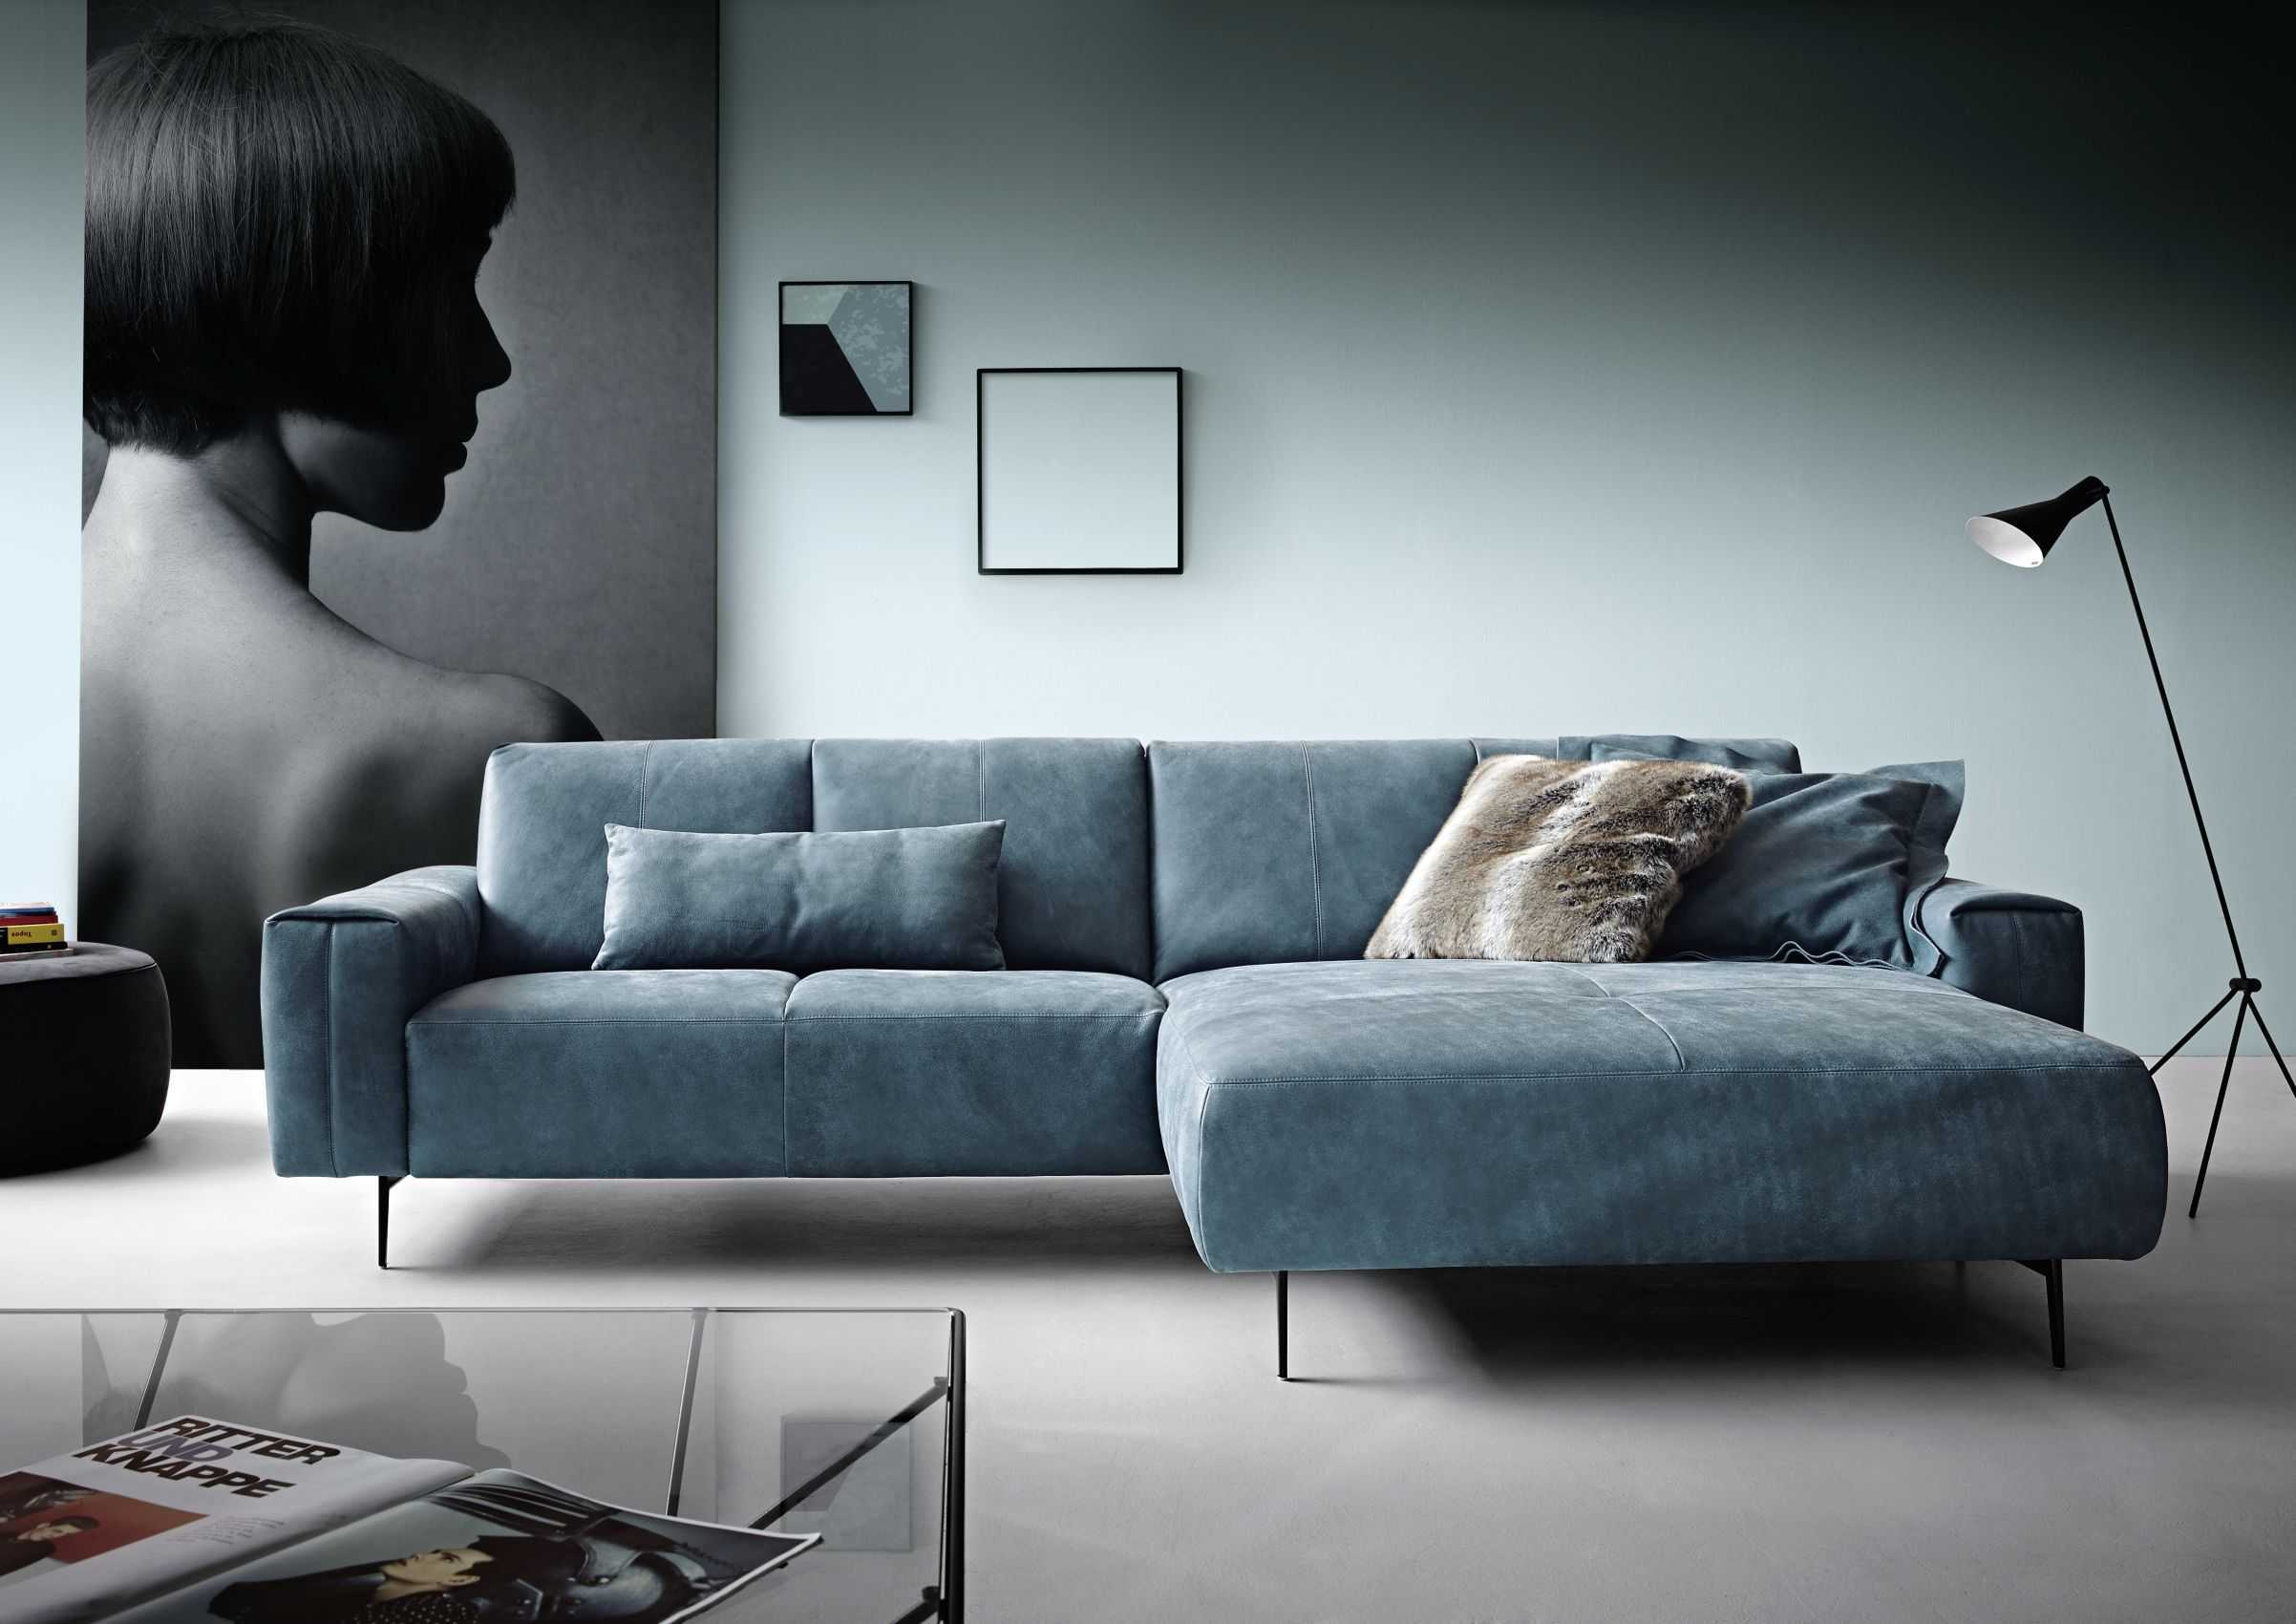 Как выбрать диван по форме, виду, материалу, цели использования